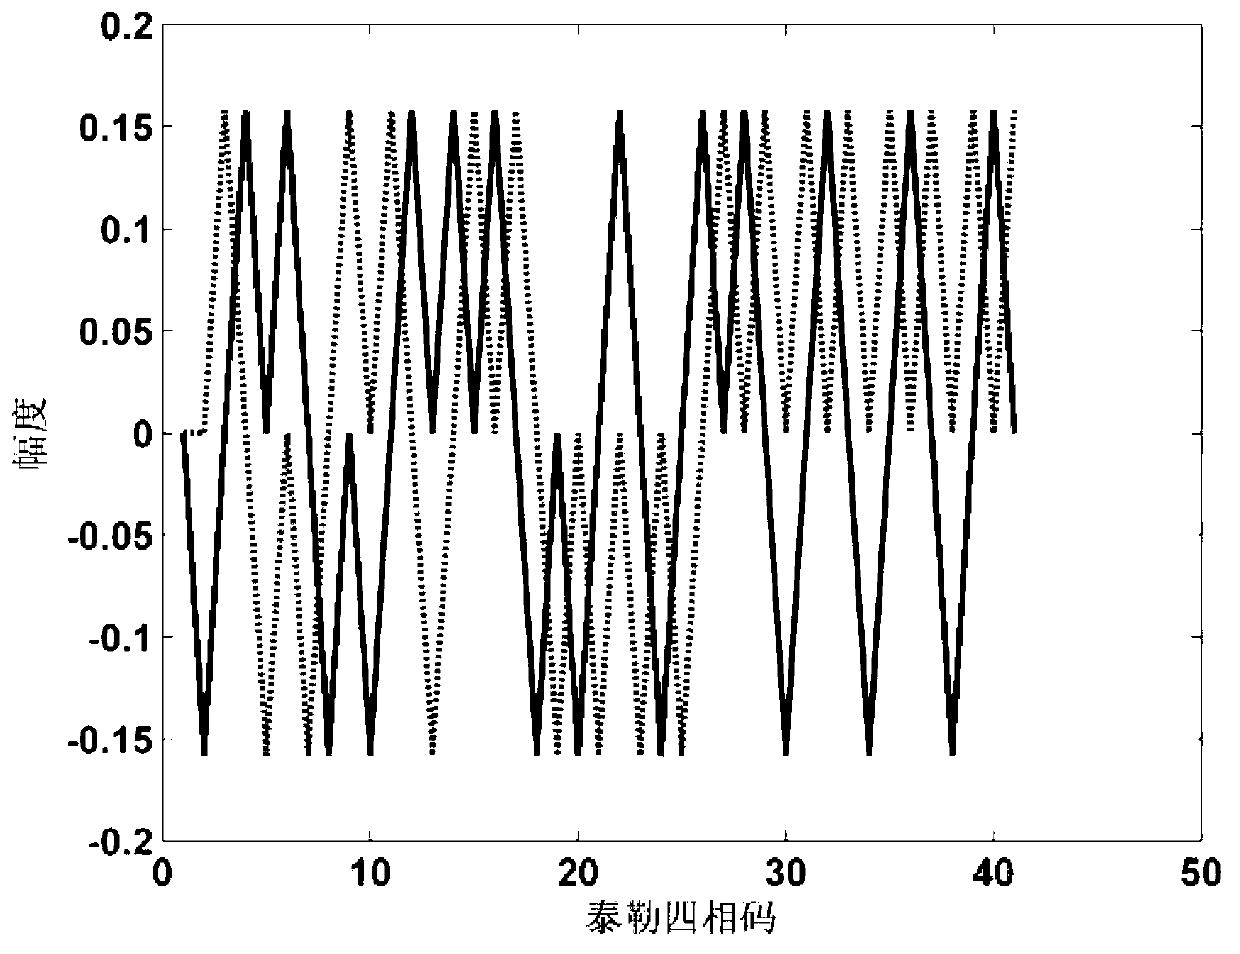 Radar pulse compression filter optimization design method applied to random signal waveforms